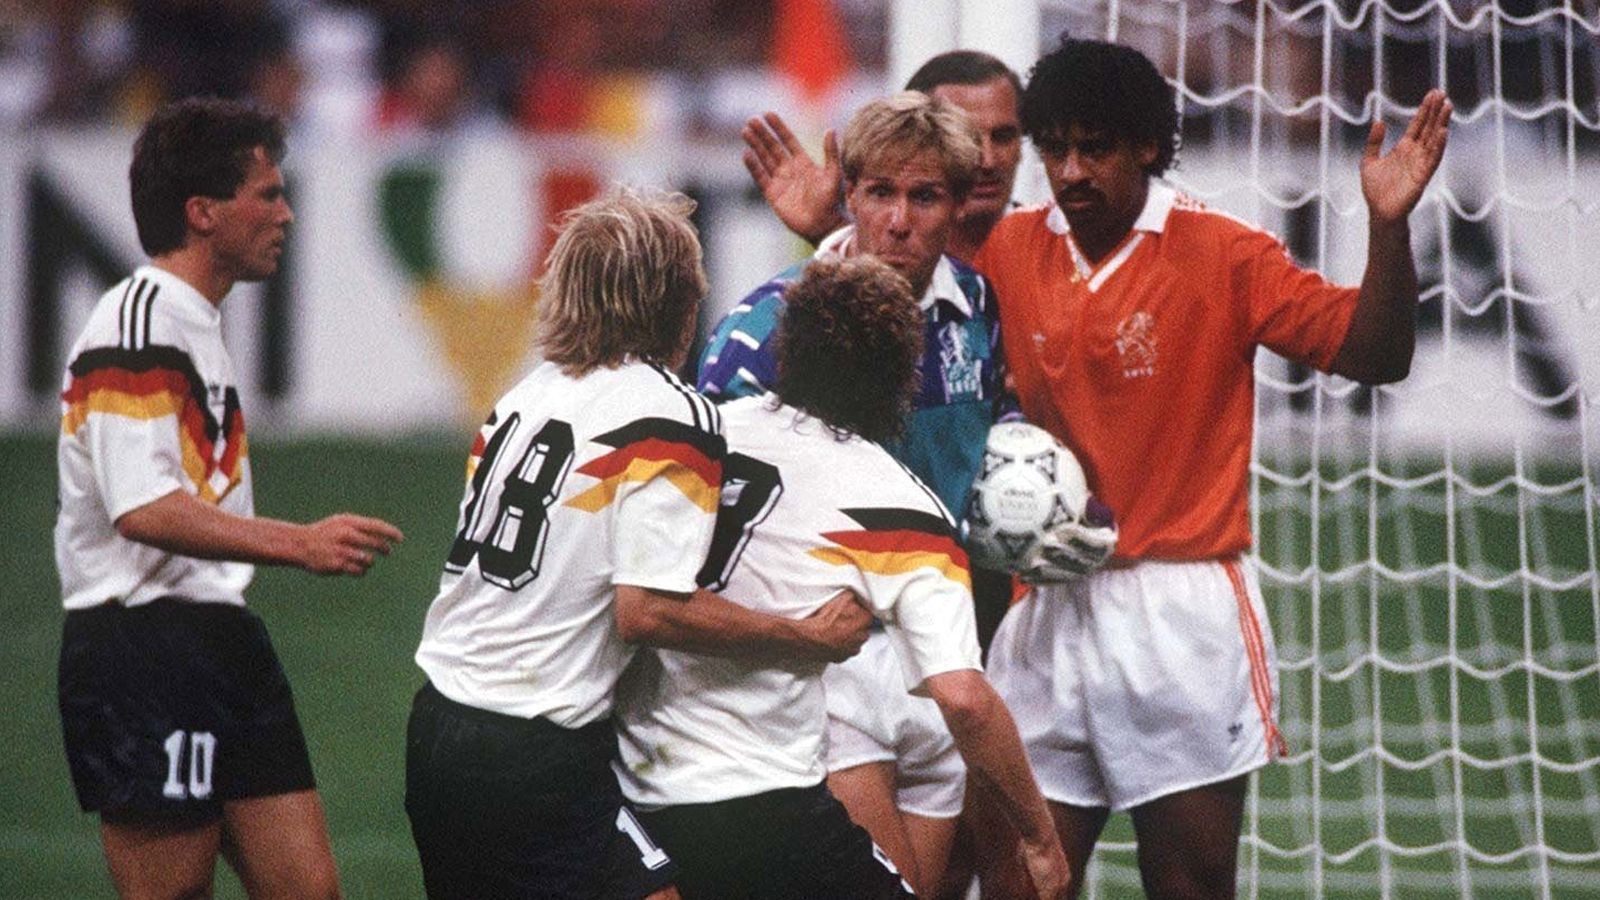 <strong>Deutschland – Niederlande 2:1 (WM 1990, Achtelfinale)</strong><br>
                Der Sieg ebnet den Weg ins Viertelfinale und damit auch (mal wieder) den Weg zum späteren WM-Titel. Hängen bleibt von diesem Spiel aber in erster Linie die Spuckattacke von Frank Rijkaard gegen Rudi Völler, die hässliche Fratze der Rivalität. Beide fliegen dafür vom Platz.
